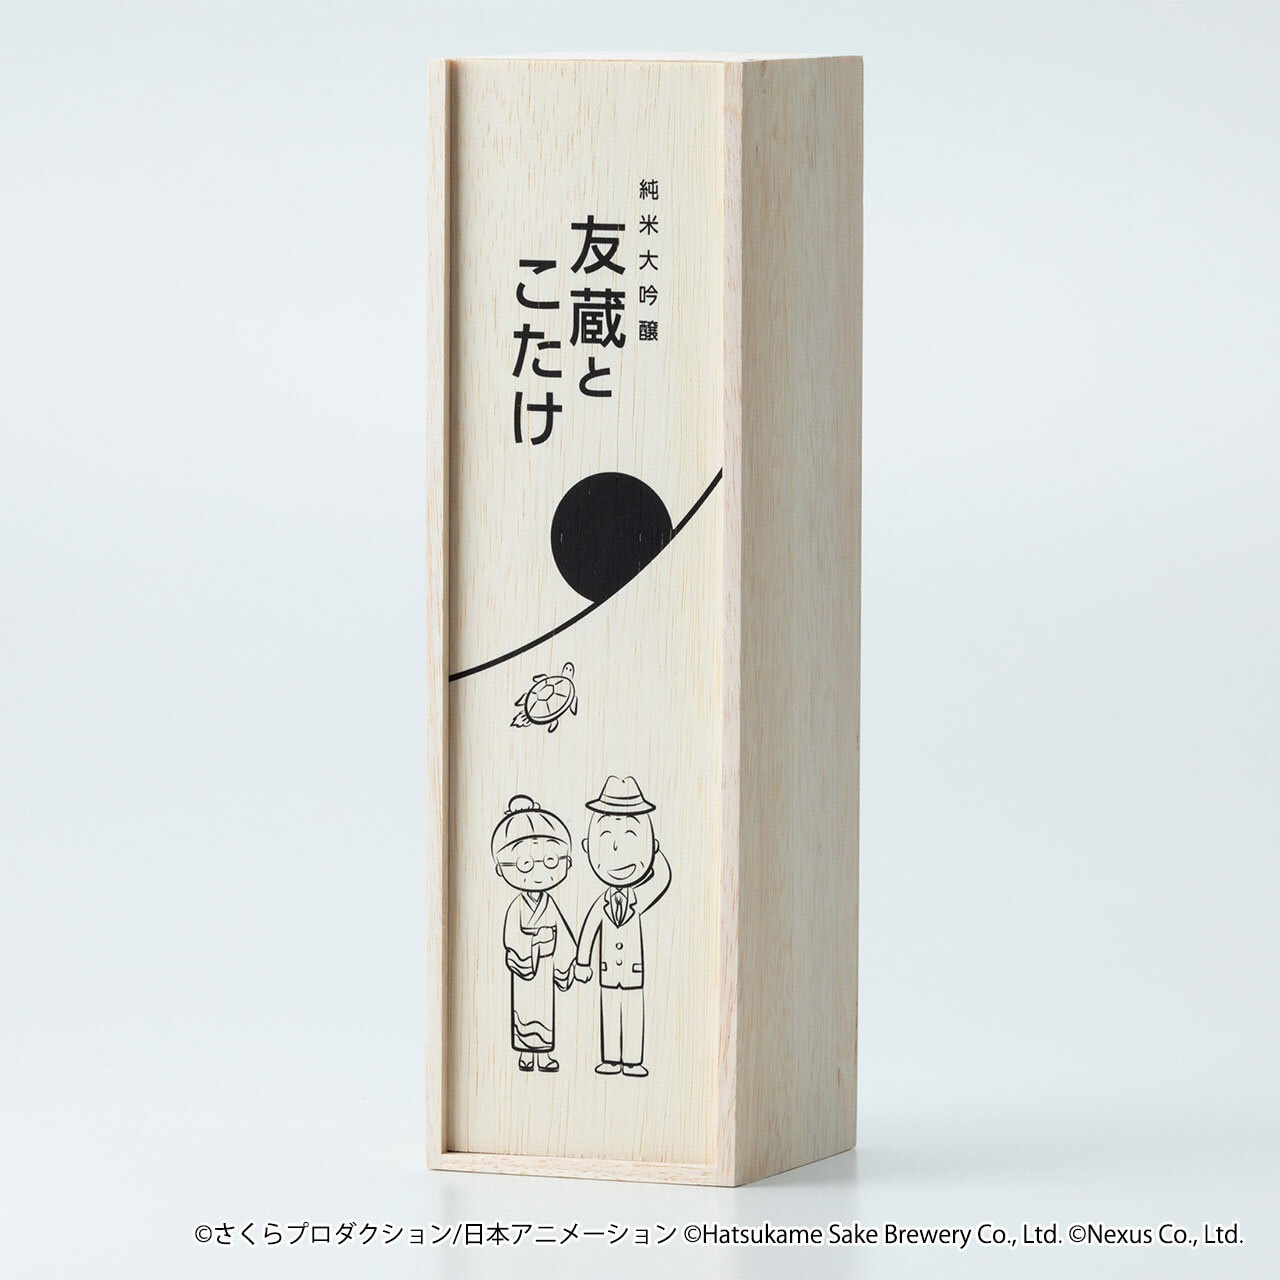 【限定223本】ちびまる子ちゃんコラボ日本酒「純米大吟醸 友蔵とこたけ」